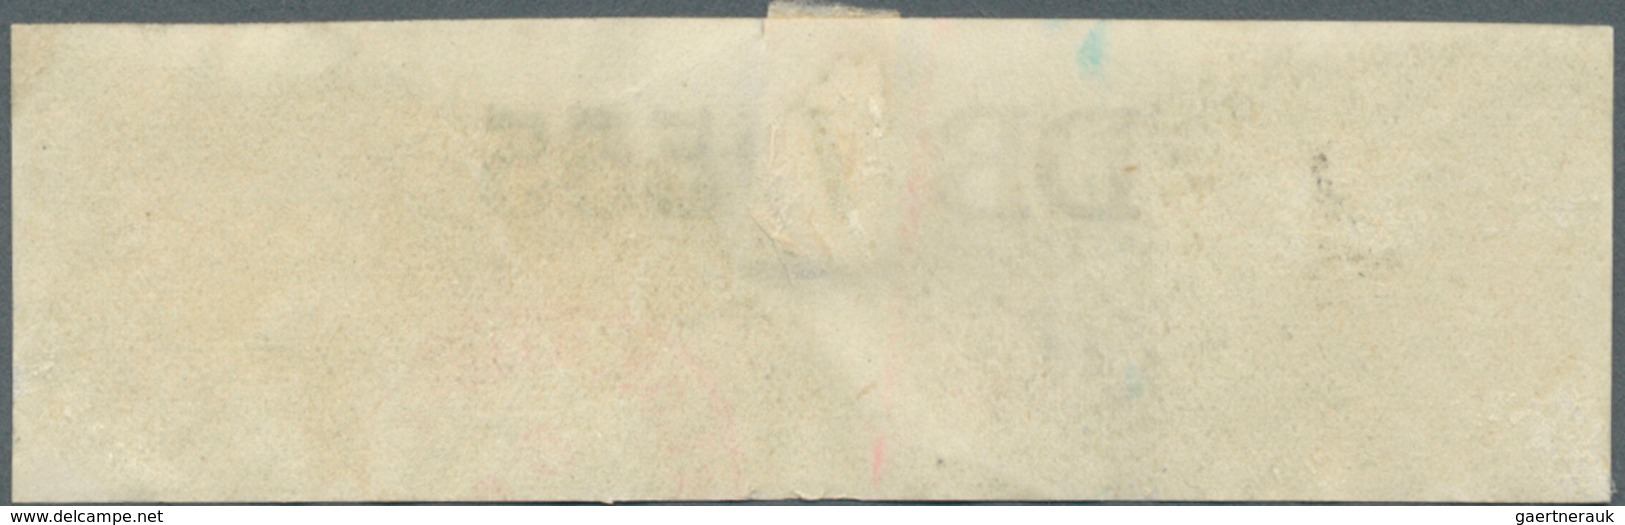 Kriegsgefangenen-Lagerpost: 1943, 7.6., Kriegsgefangenenbrief aus BREMEN, per Luftpost, 4 seitiger T